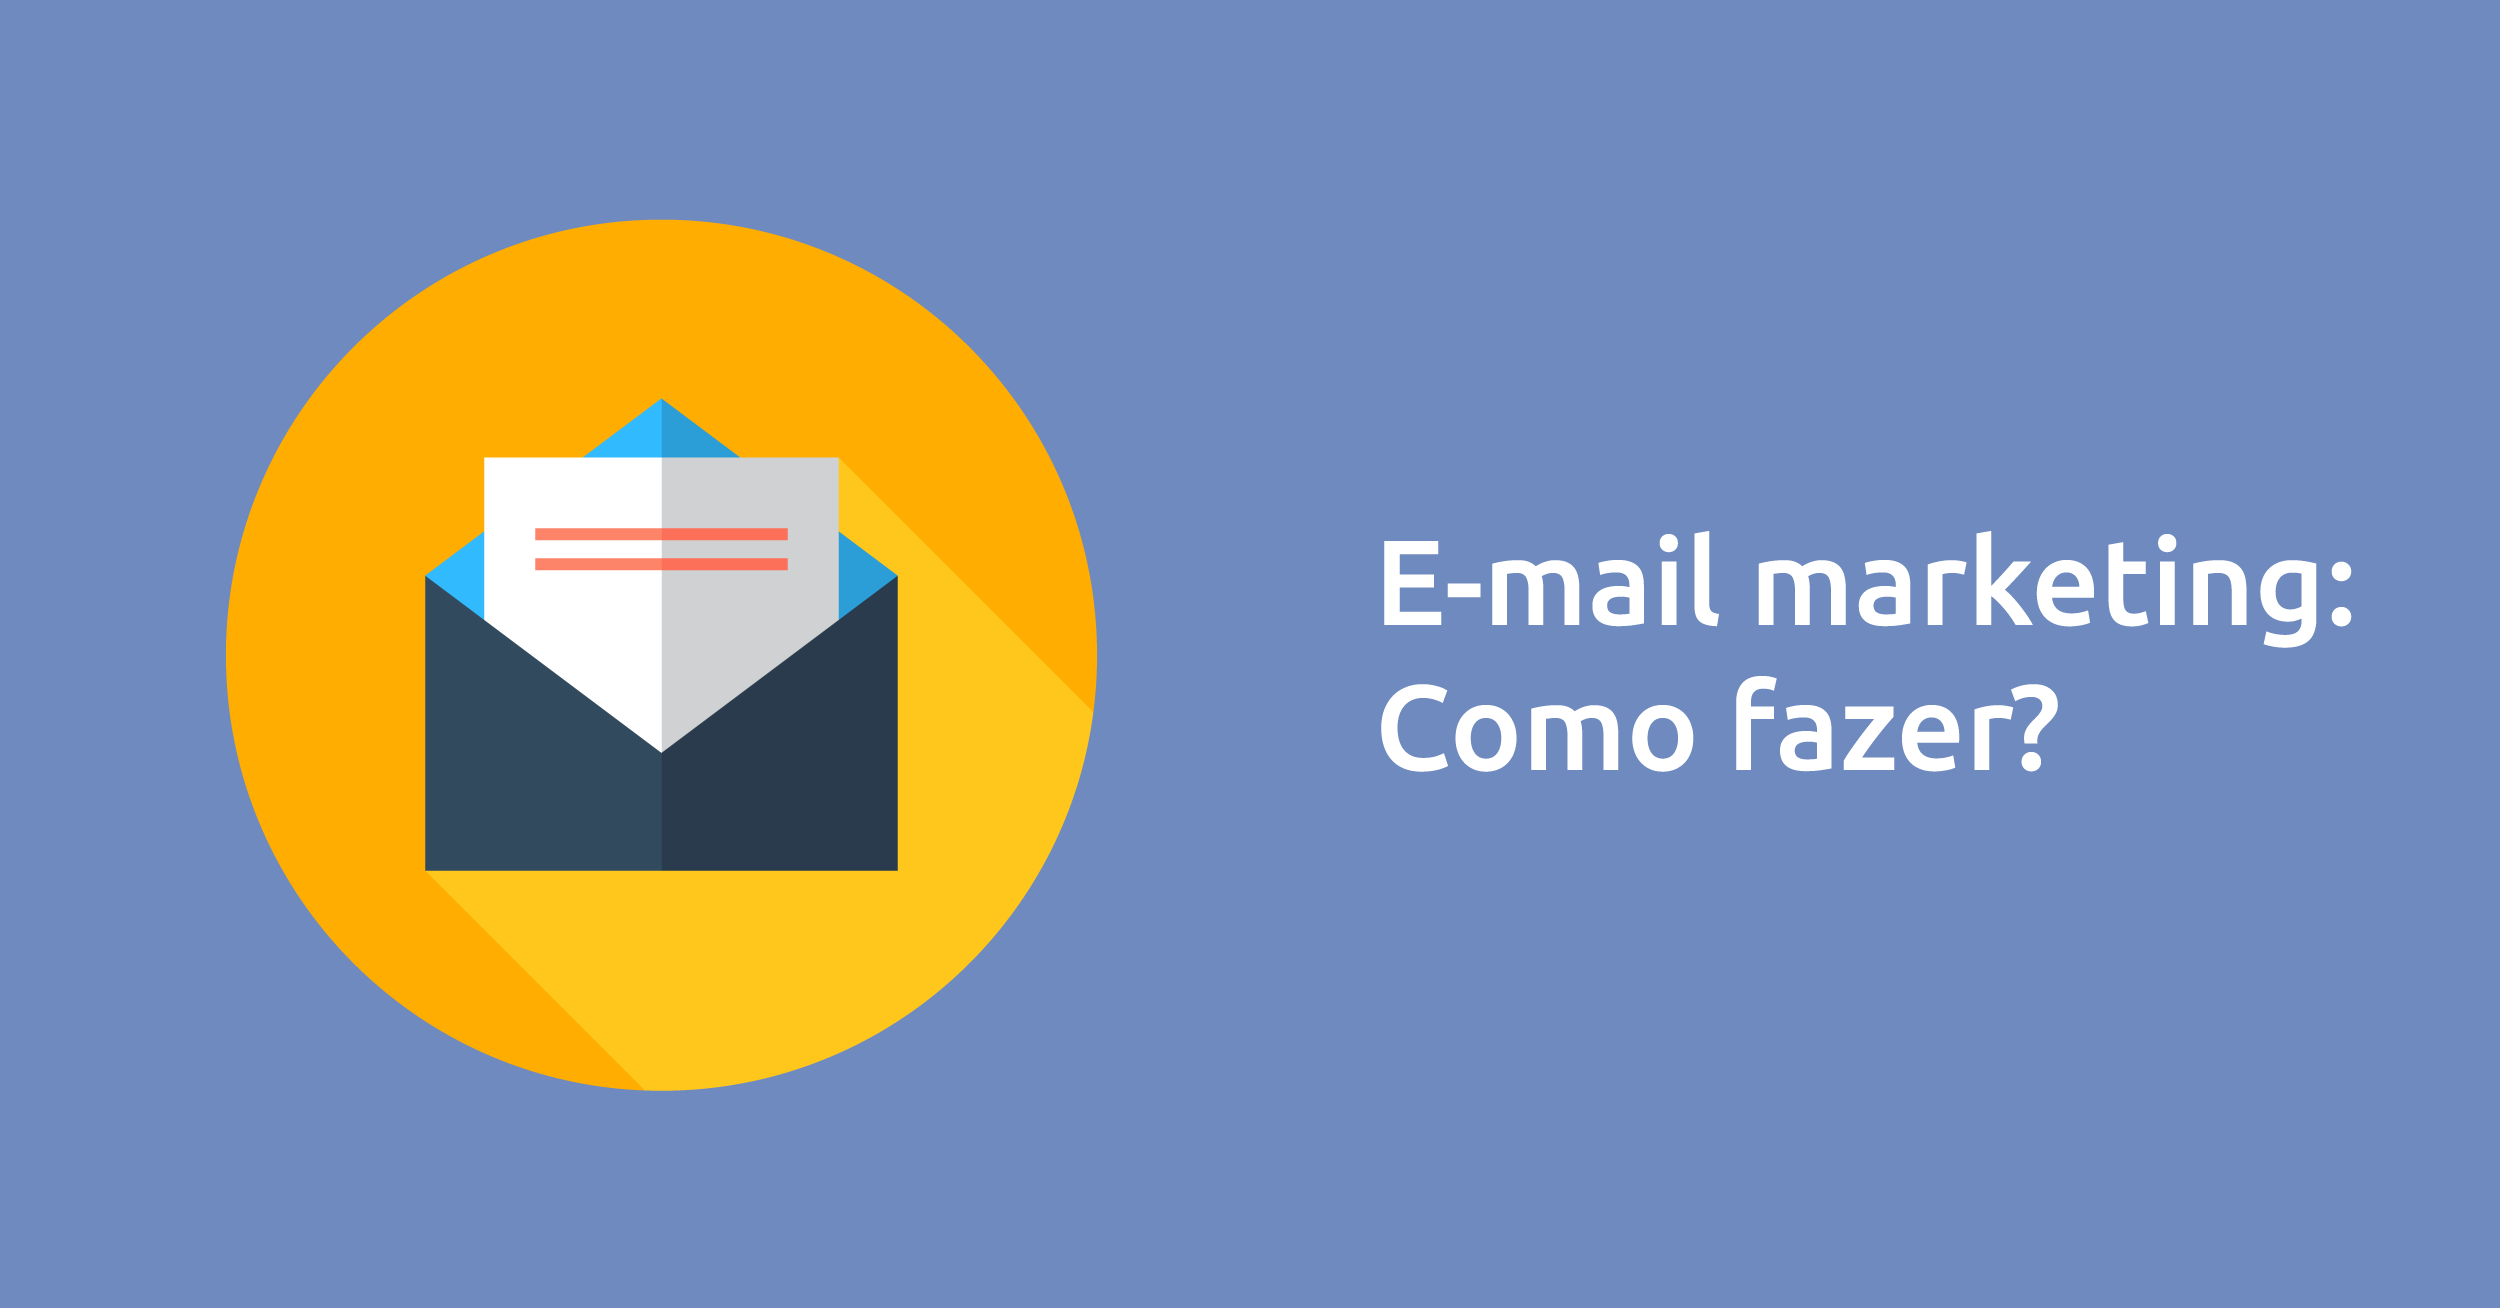 E-mail marketing: como fazer?